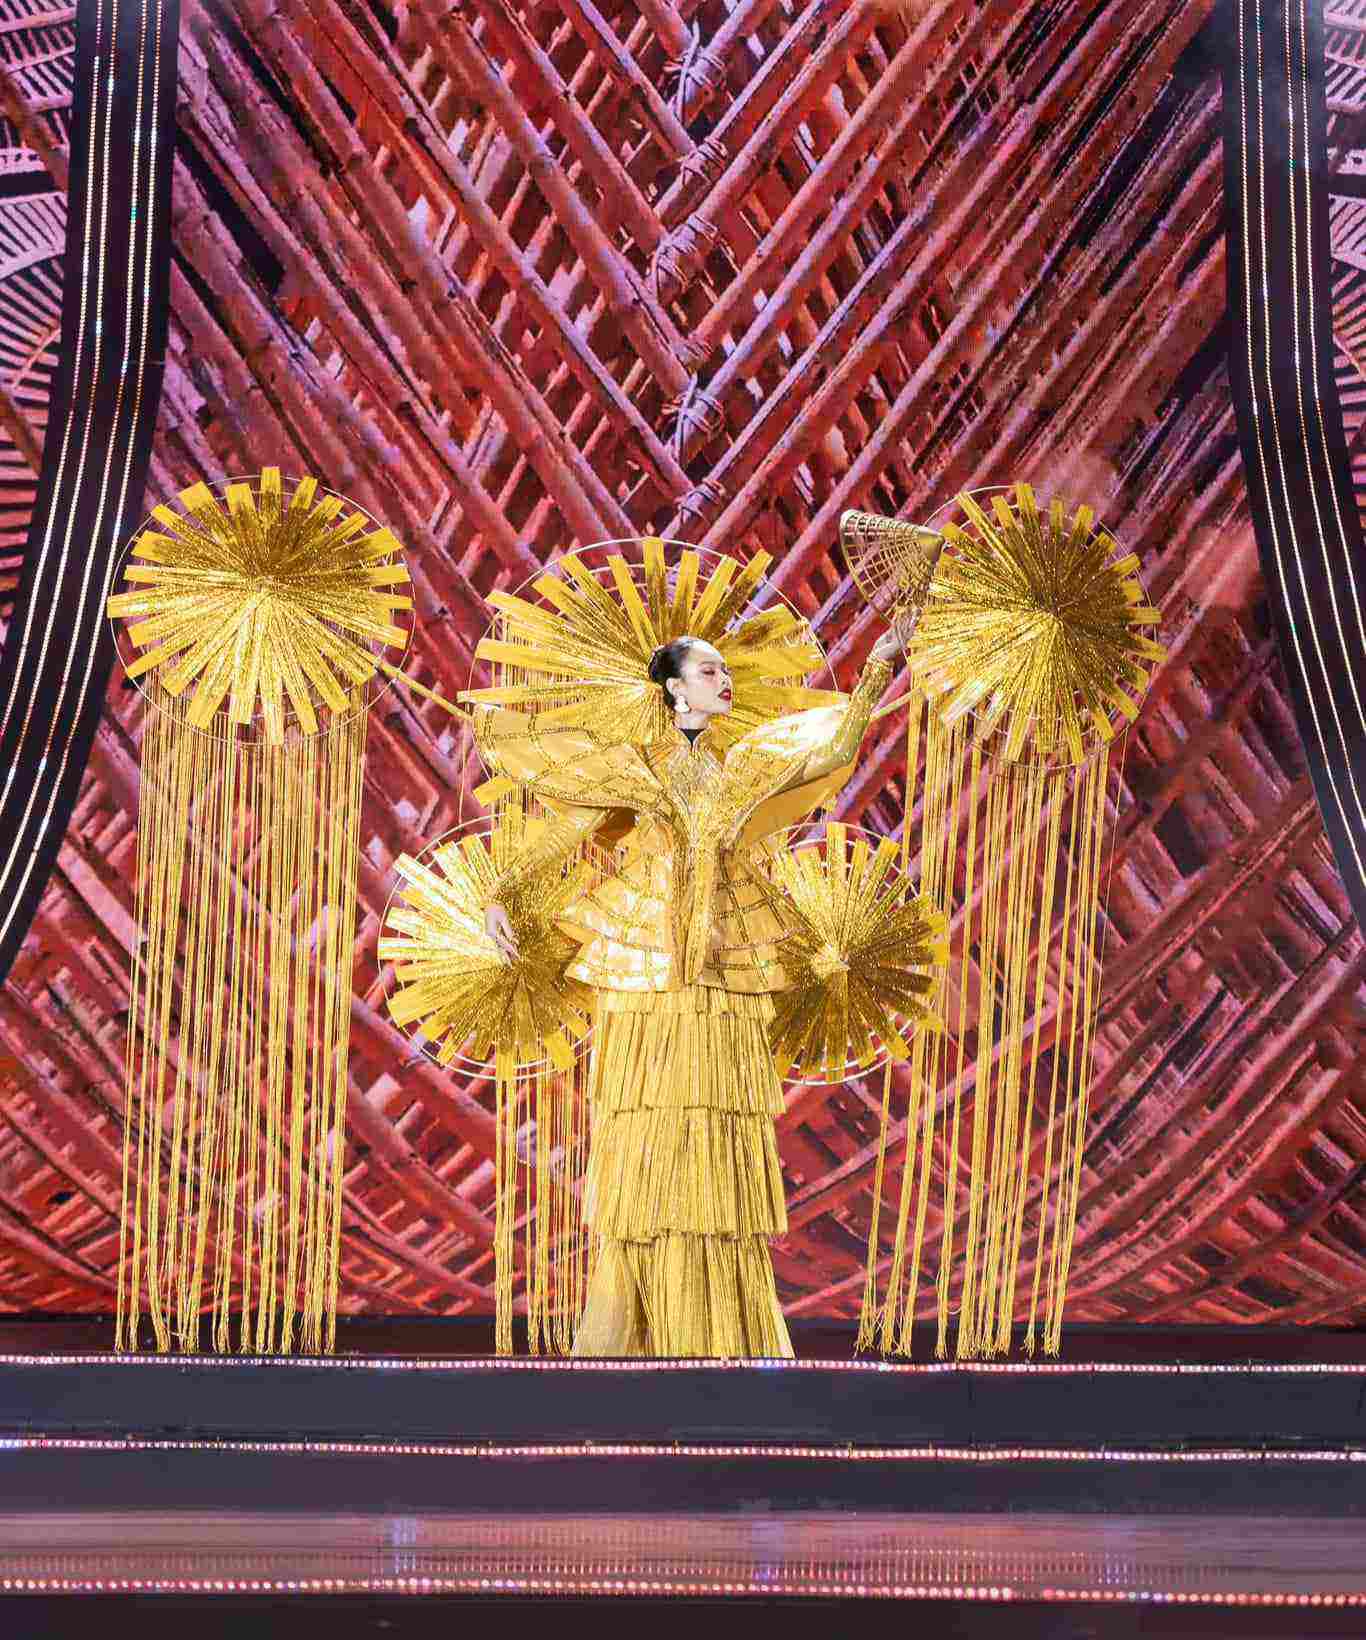 Sân khấu Miss Cosmo Vietnam bị chê "tối như đêm 30", sàn trơn trượt "hại" thí sinh - 3